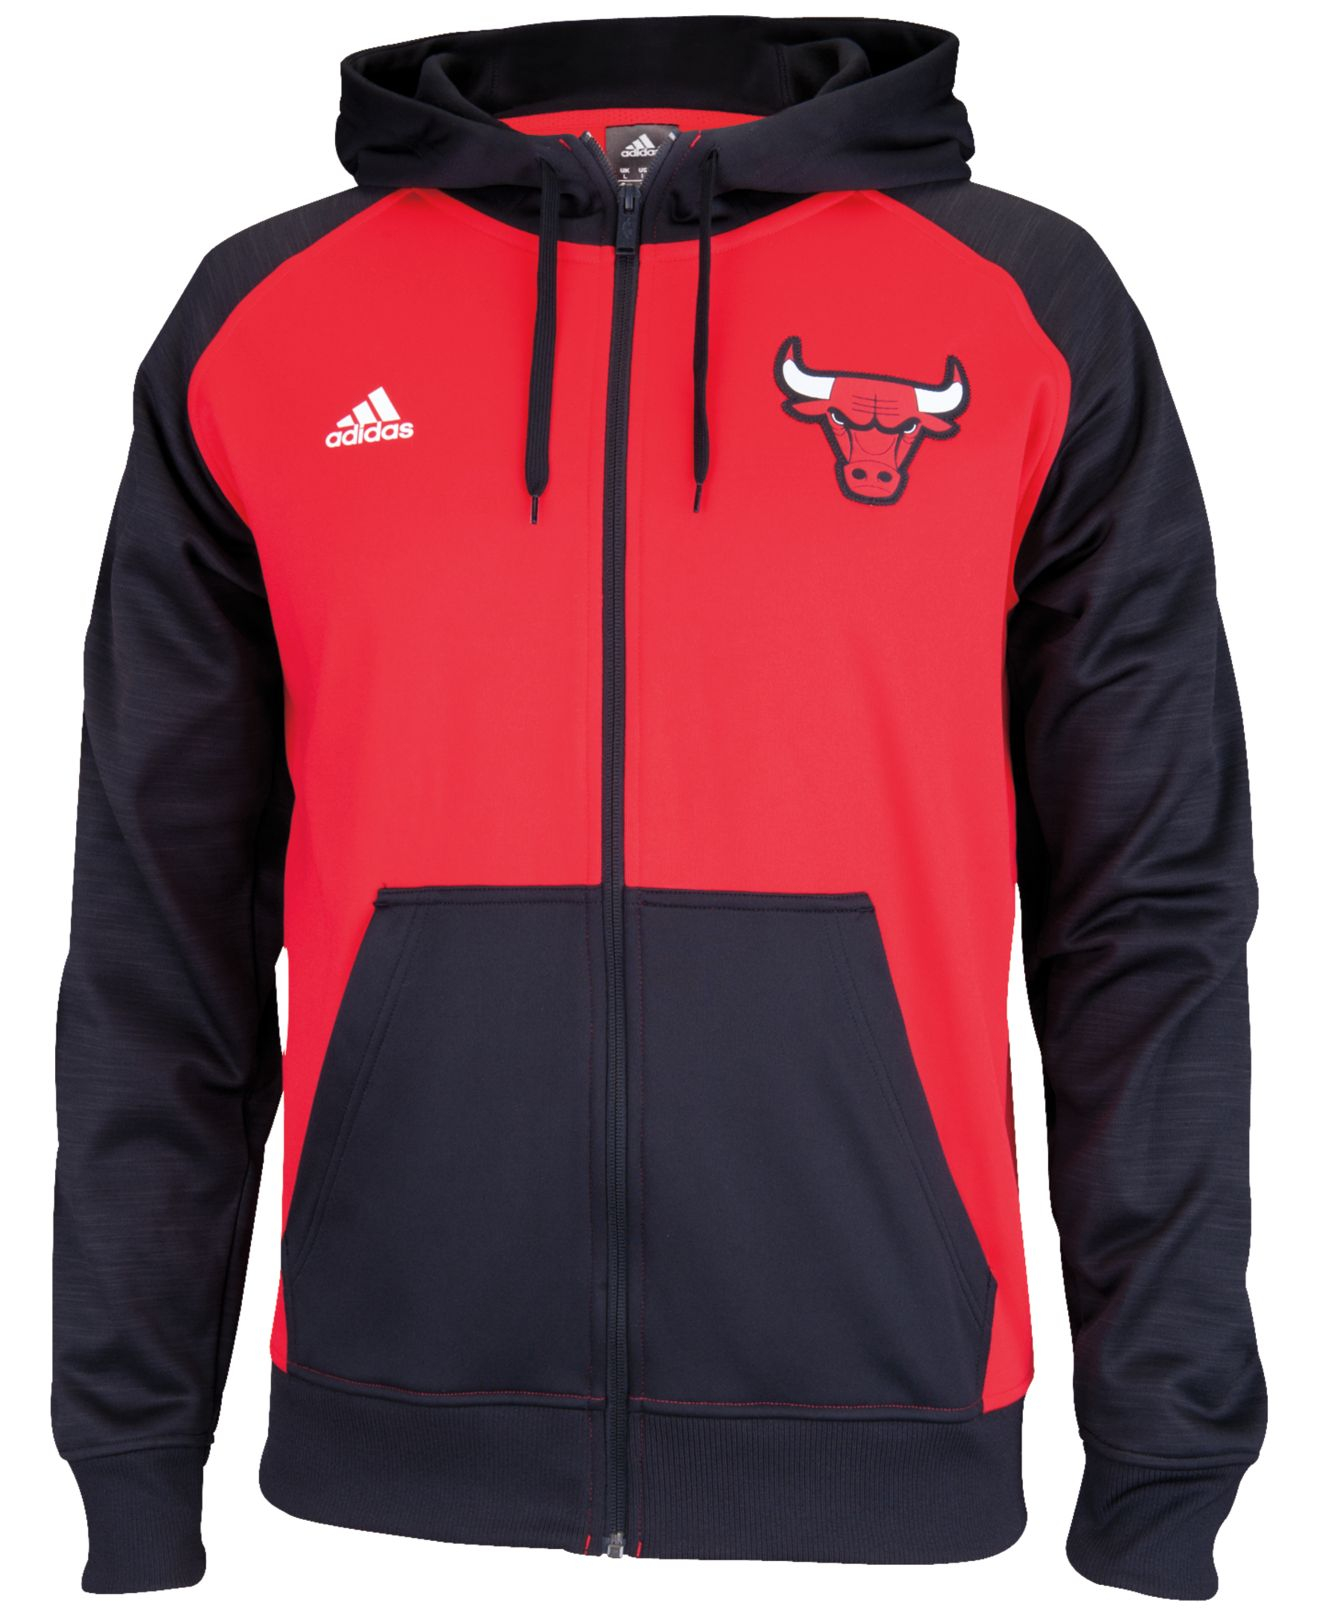 adidas Men'S Chicago Bulls Pre-Game Full-Zip Hoodie in Red/Black (Red ...